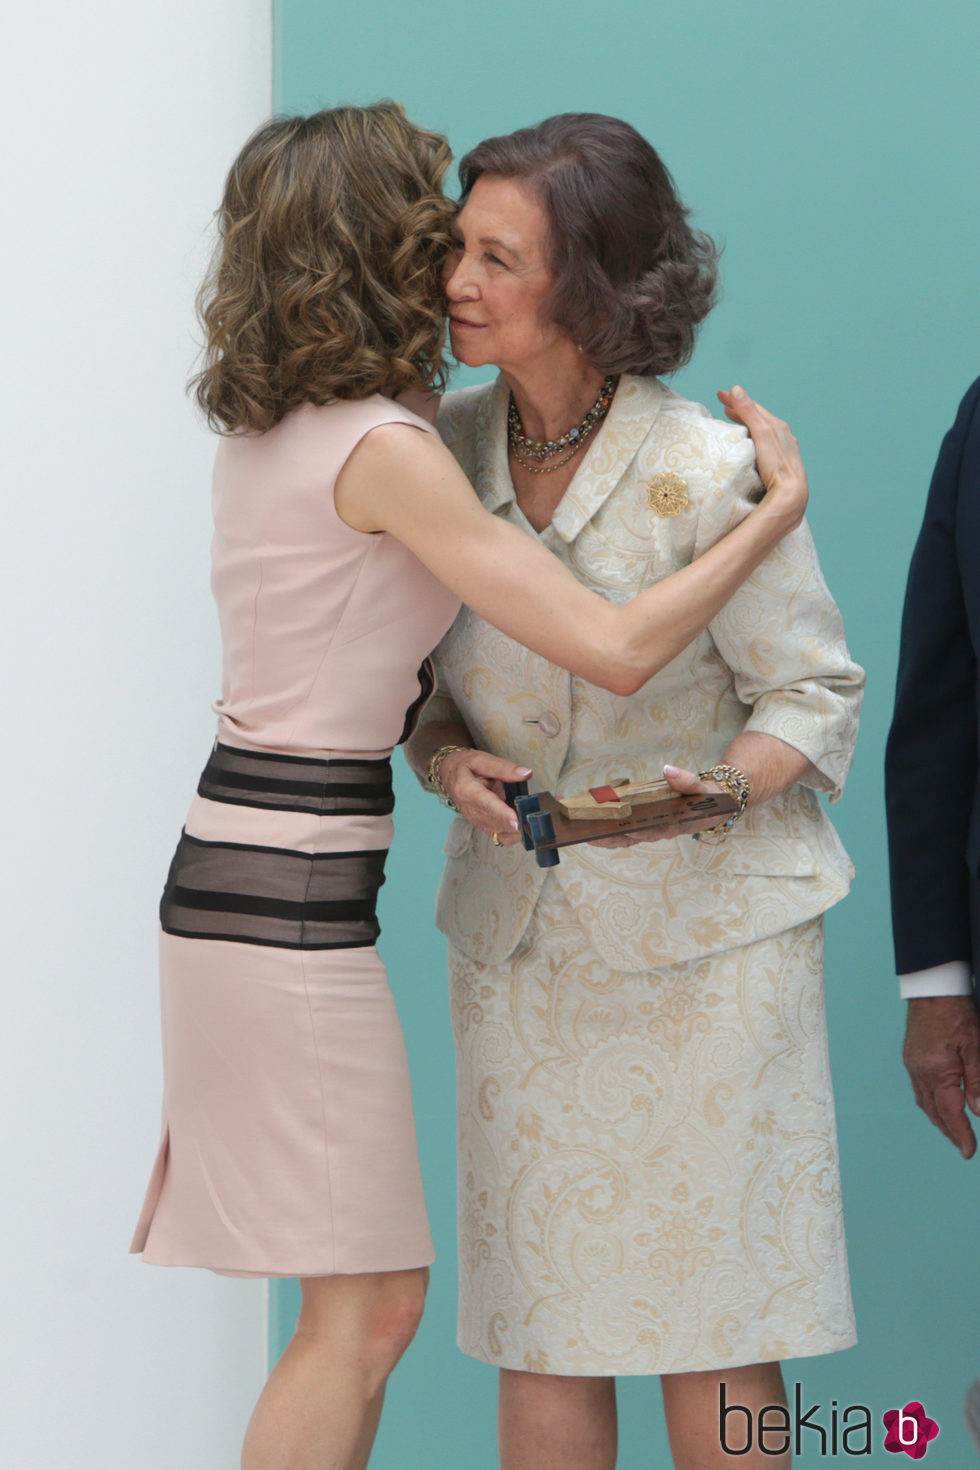 La Reina Letizia besa a la Reina Sofía en el 30 aniversario de la FAD